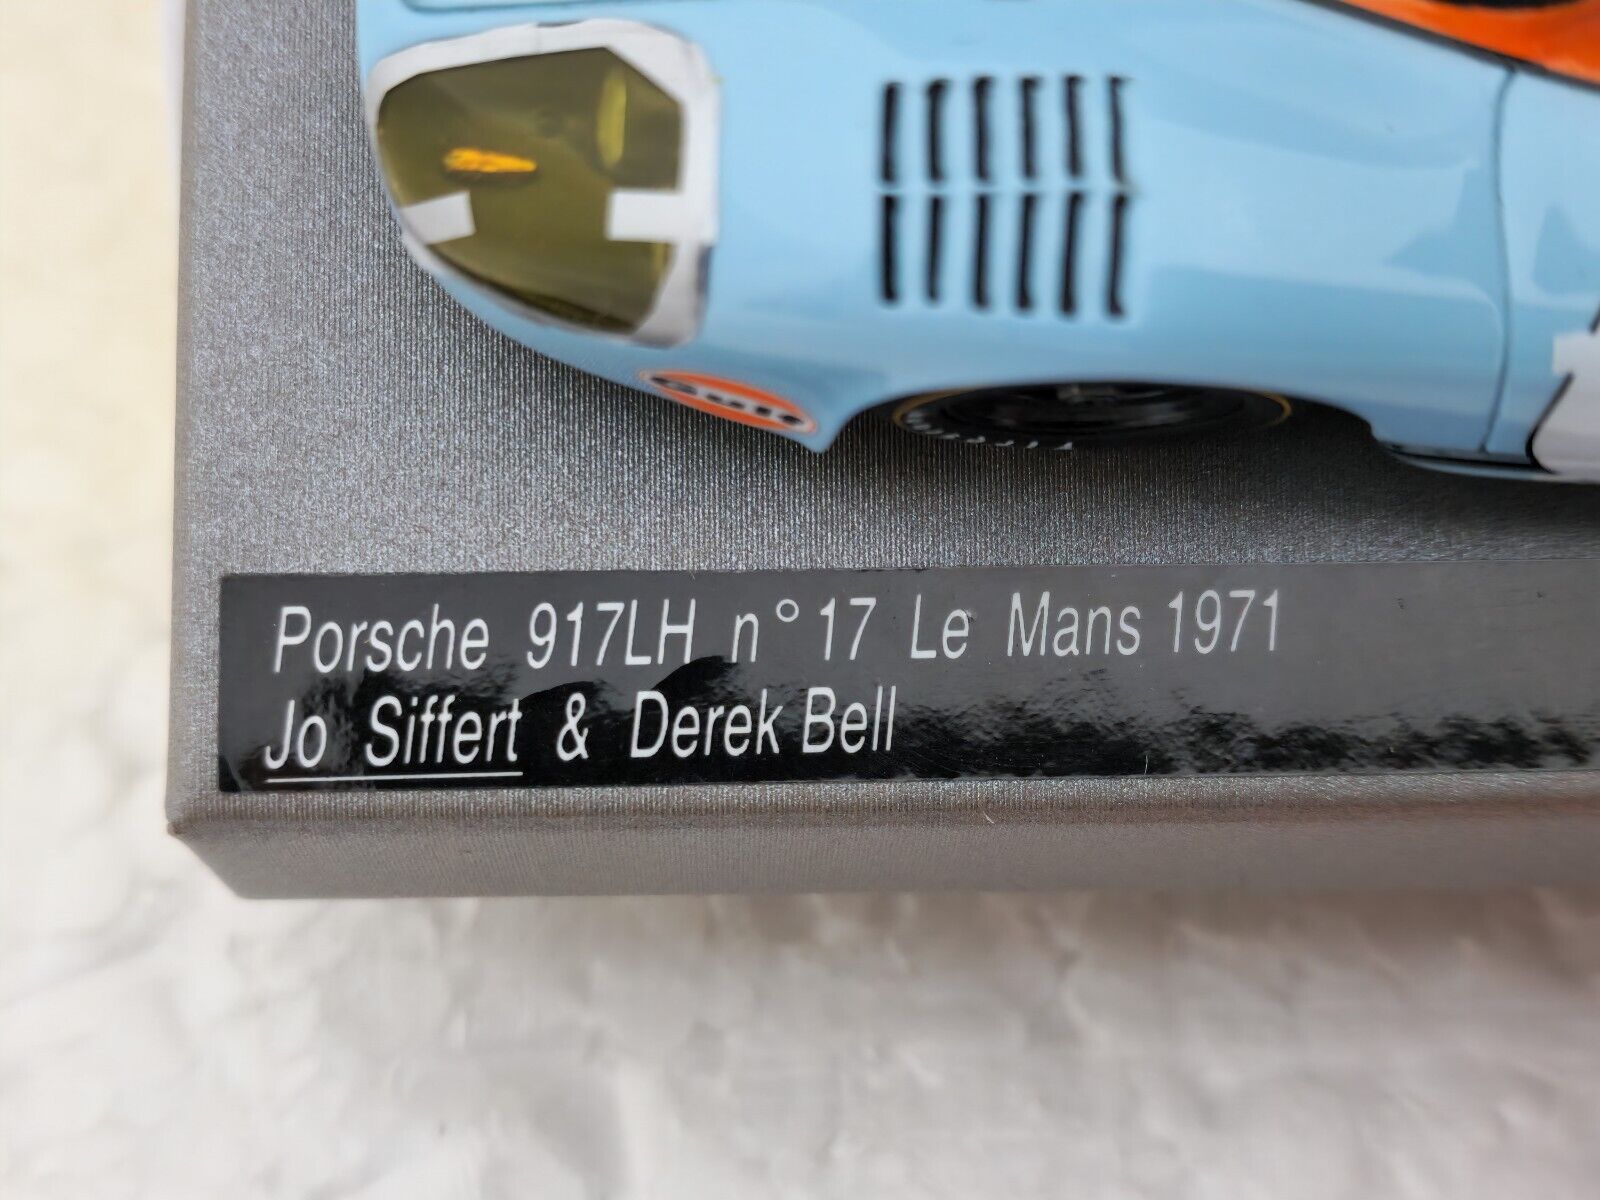 LE MANS miniatures Porsche 917 LH n°25 - Slot Car-Union